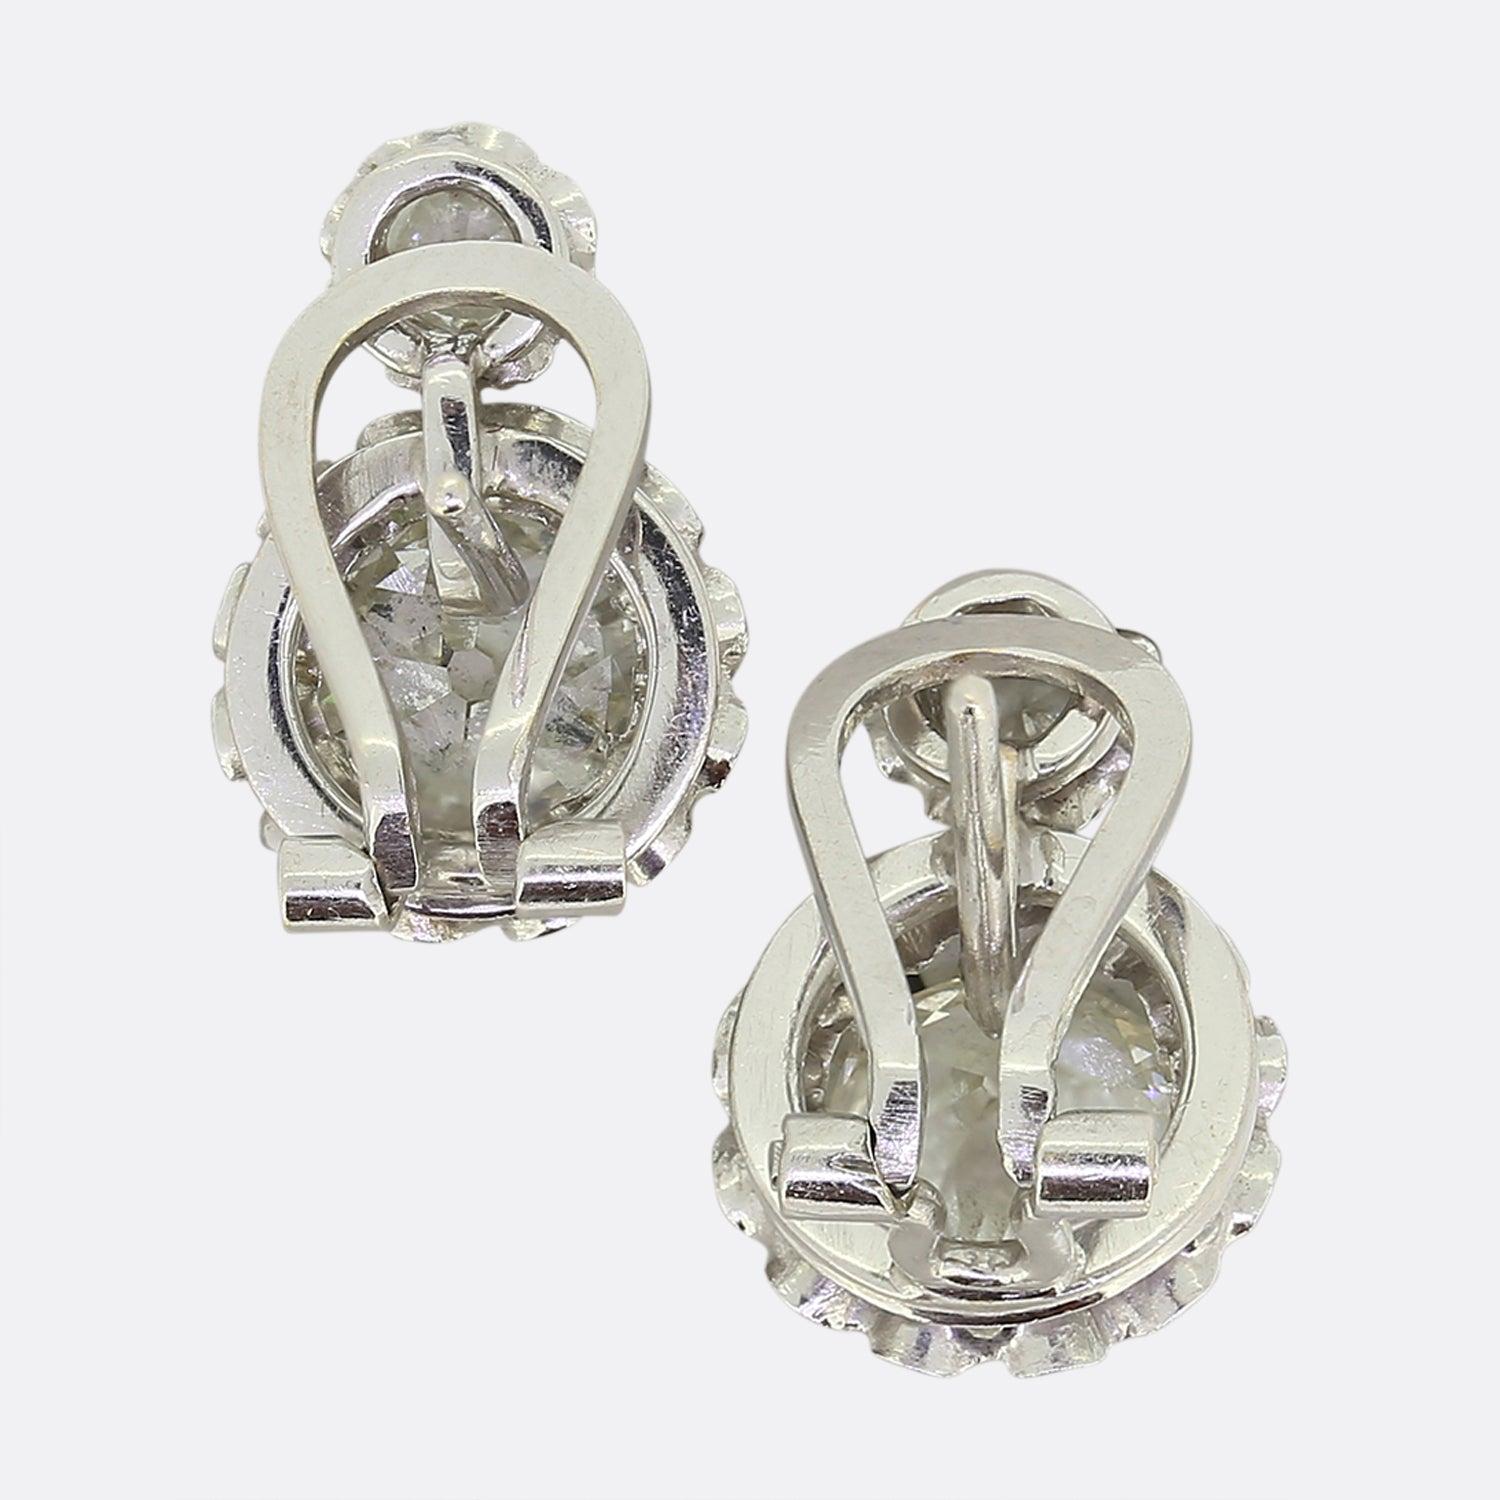 Il s'agit d'une magnifique paire de boucles d'oreilles en diamant datant des années 1950. Chaque boucle d'oreille est ornée d'un petit et d'un grand diamant de taille ancienne qui sont sertis en platine pour les faire paraître encore plus grands.